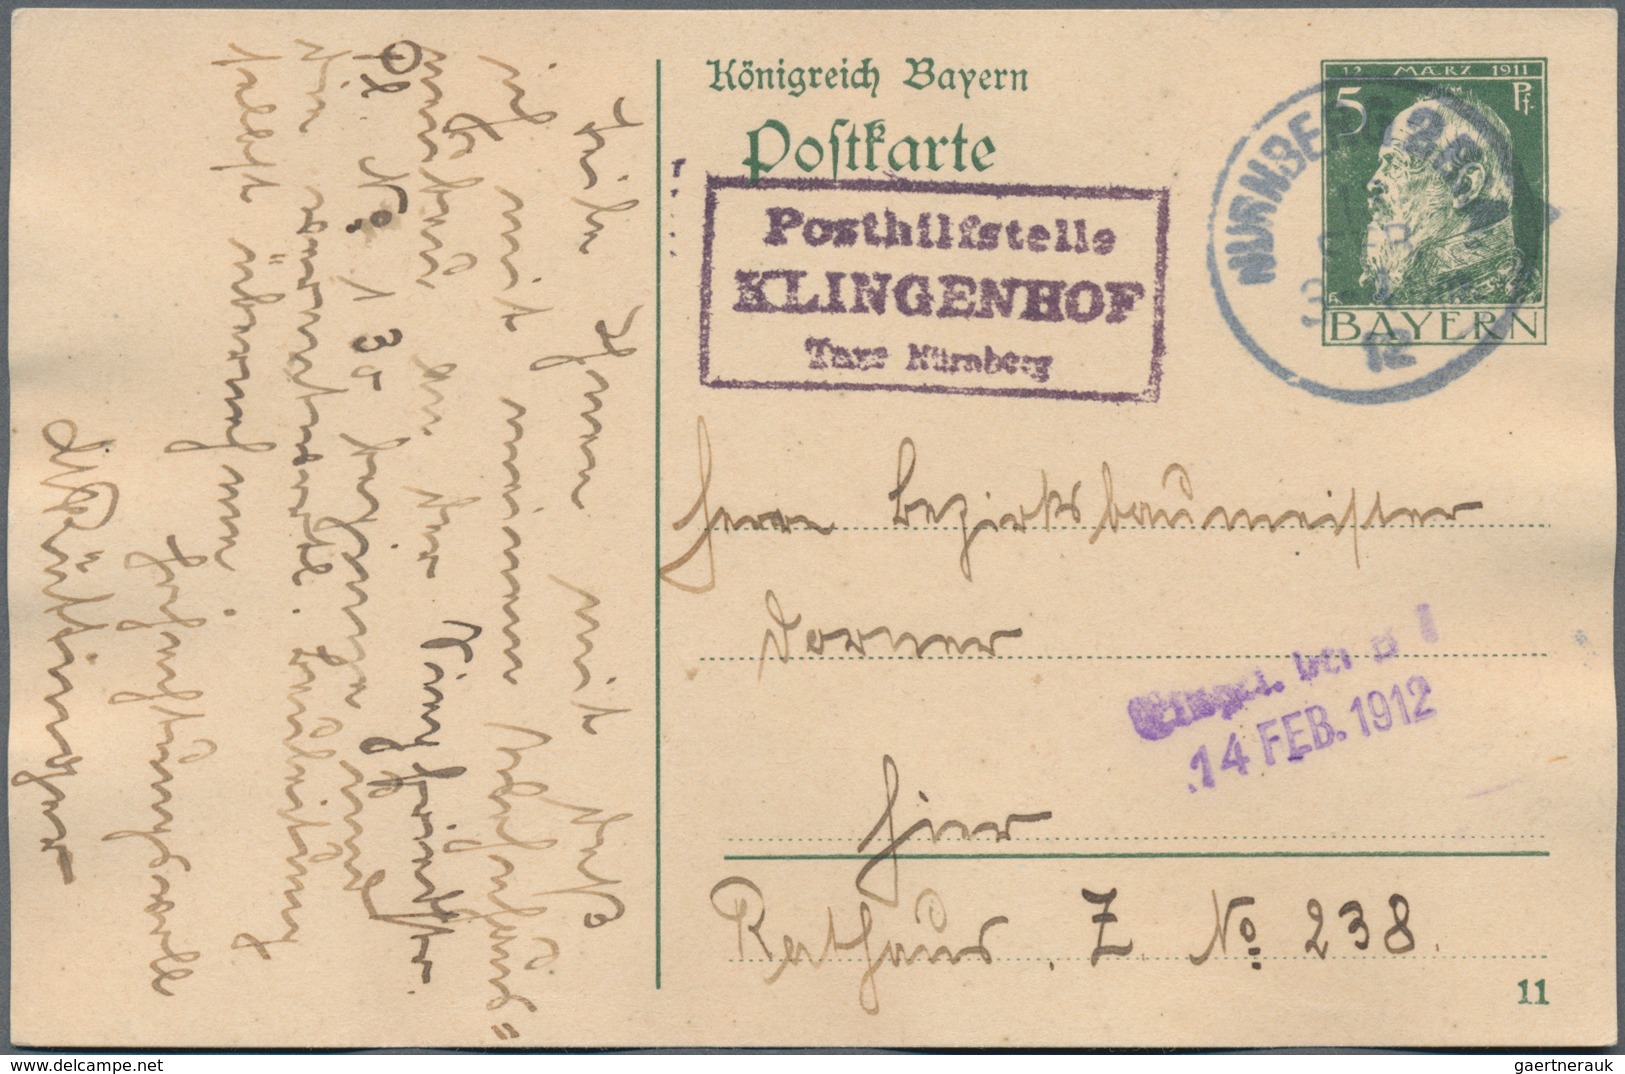 Bayern - Ganzsachen: 1885/1920 (ca.), Partie von ca. 70 meist gebrauchten Ganzsachen, dabei Karten,